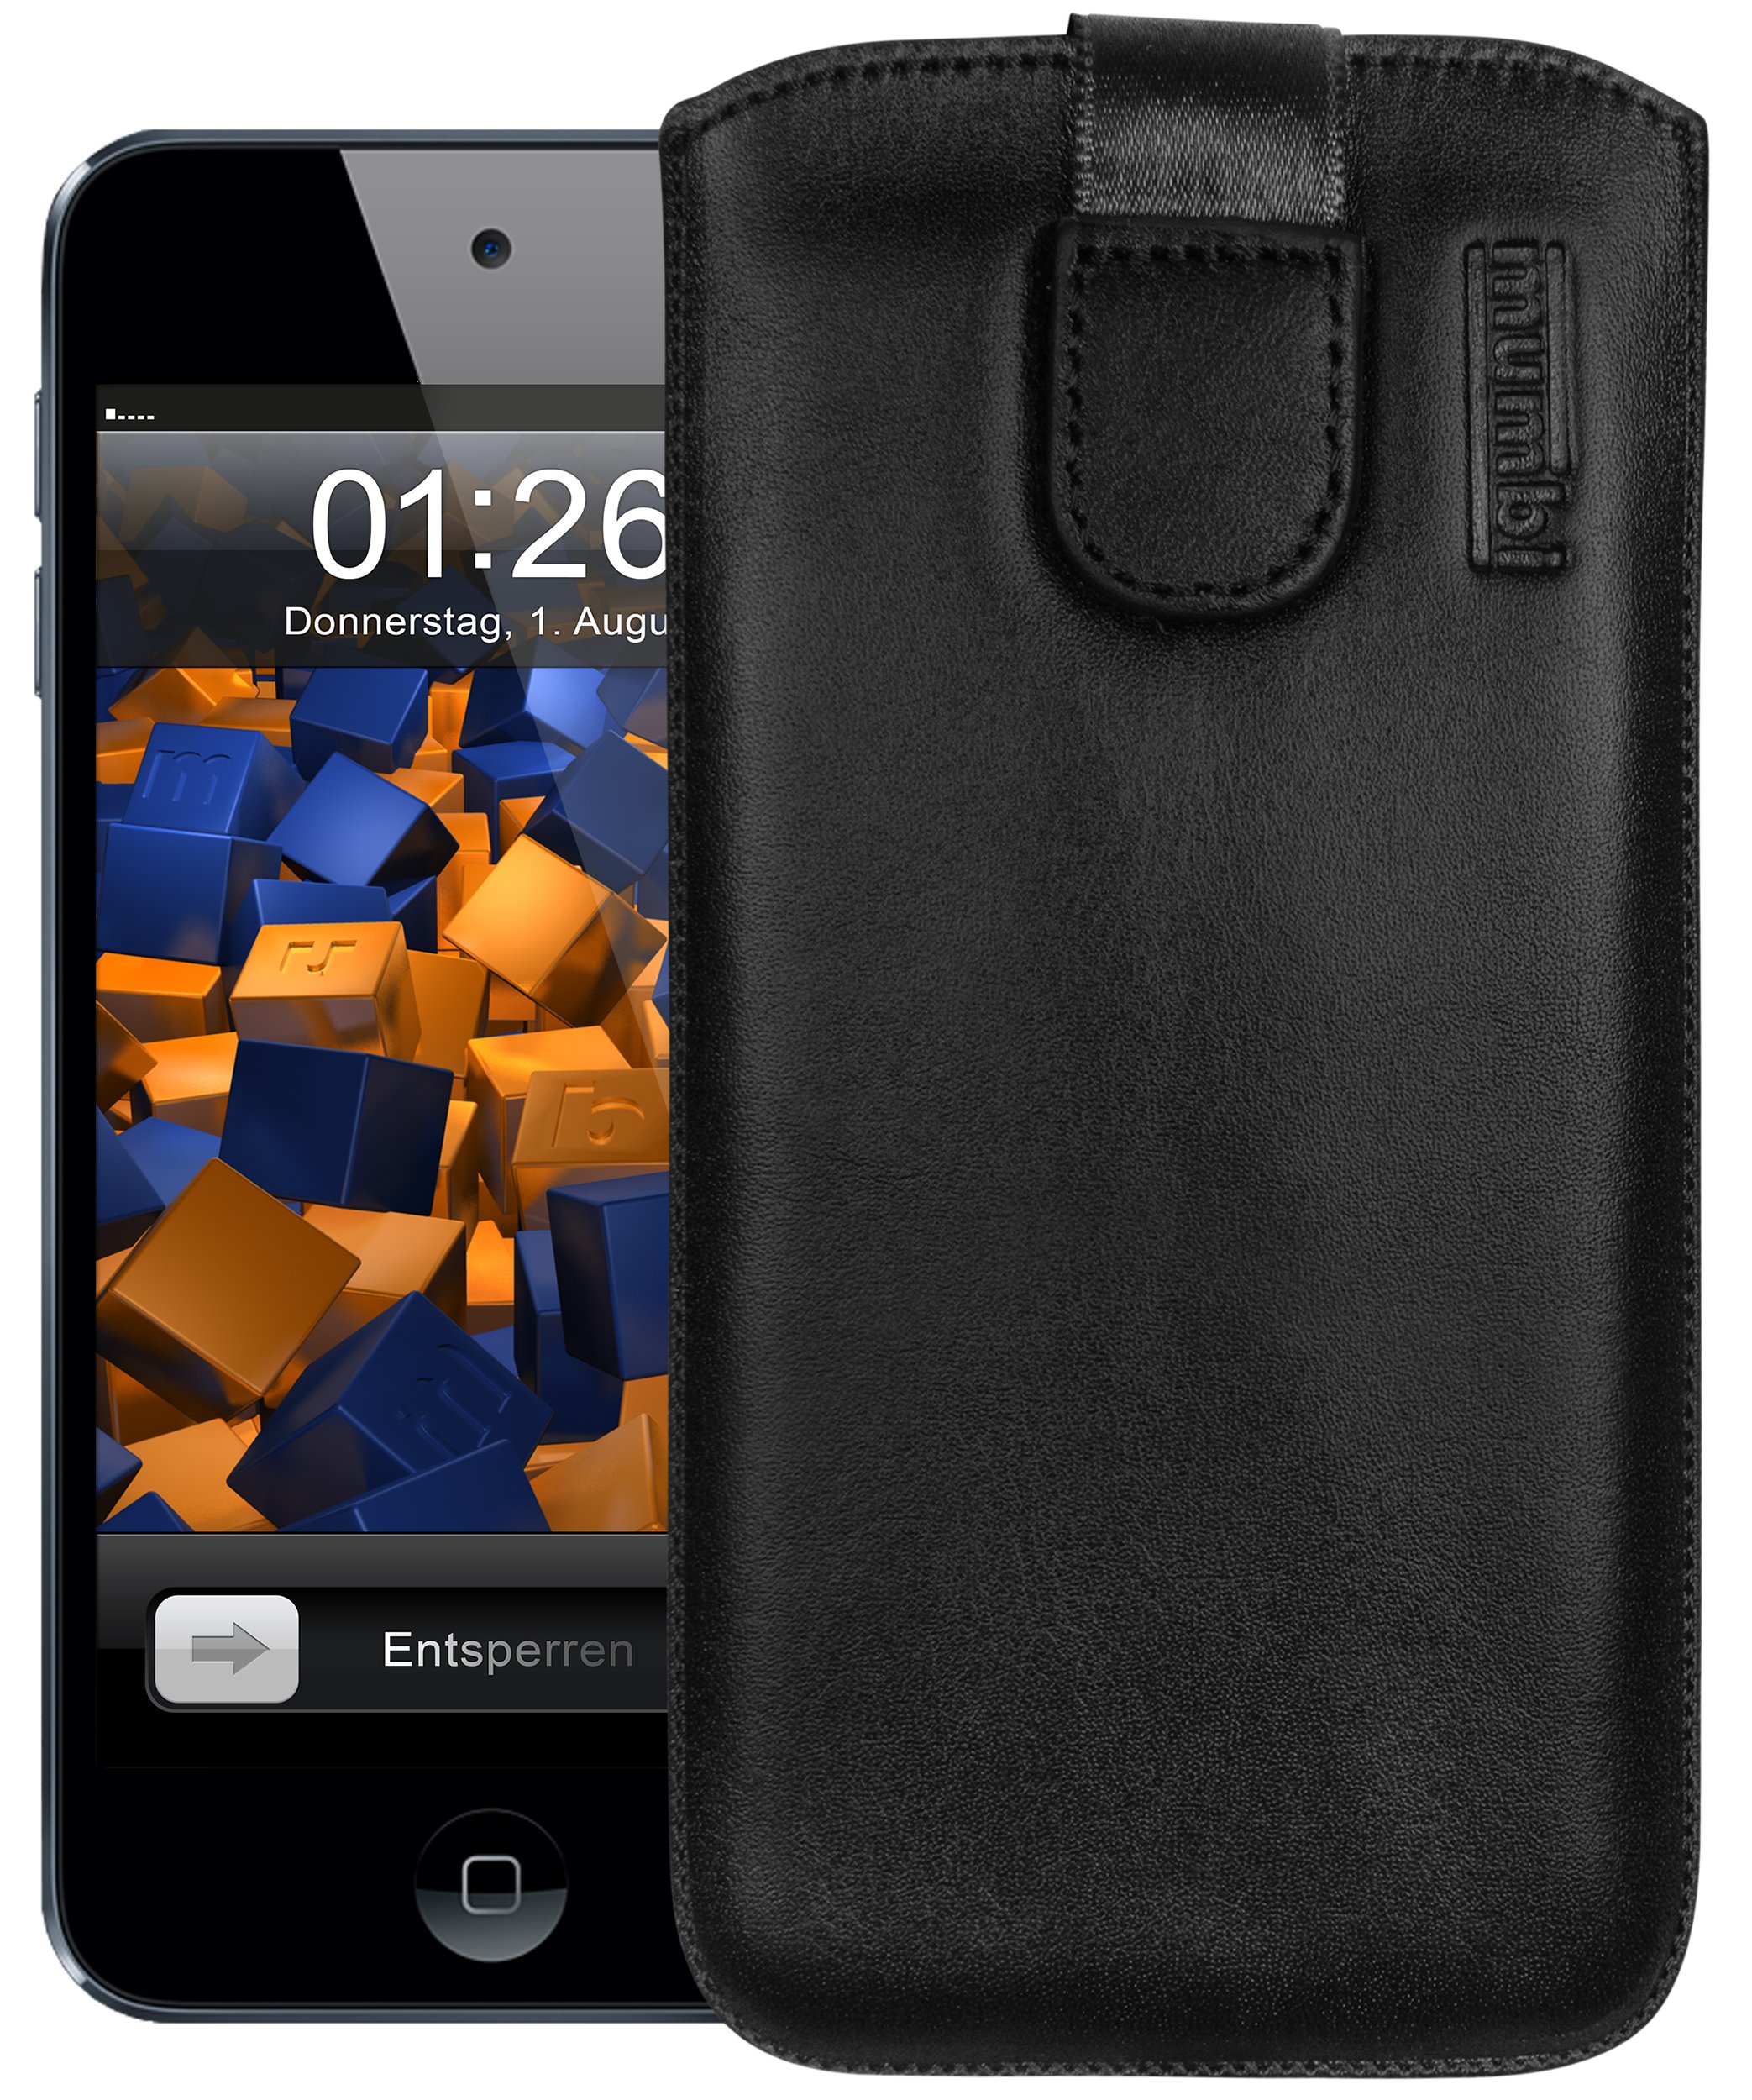 mumbi Echt Ledertasche kompatibel mit iPod Touch 5G / 6G / 7G Hülle Leder Tasche Case Wallet, schwarz